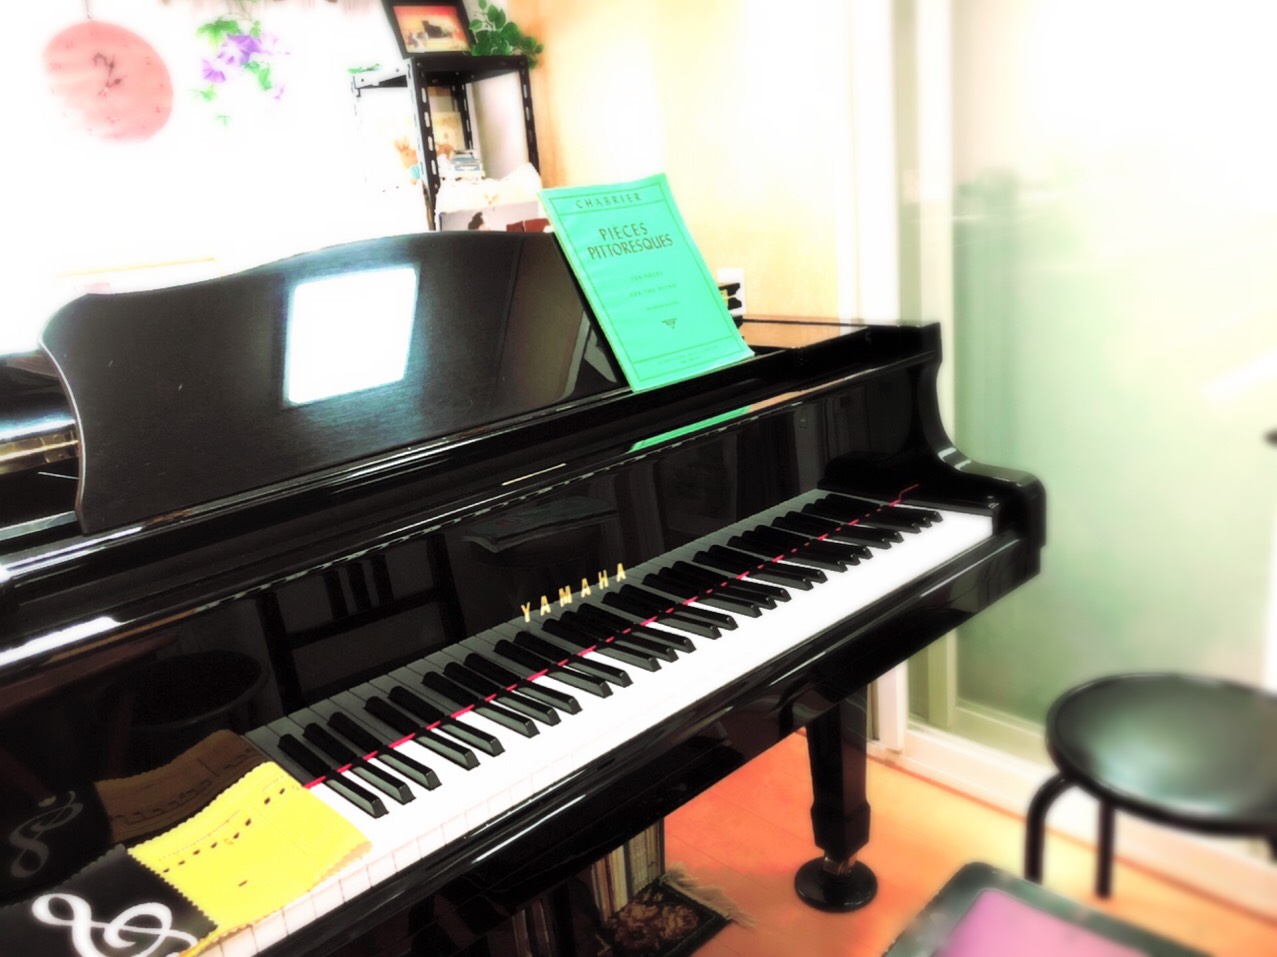 miwaピアノ教室の雰囲気がわかる写真